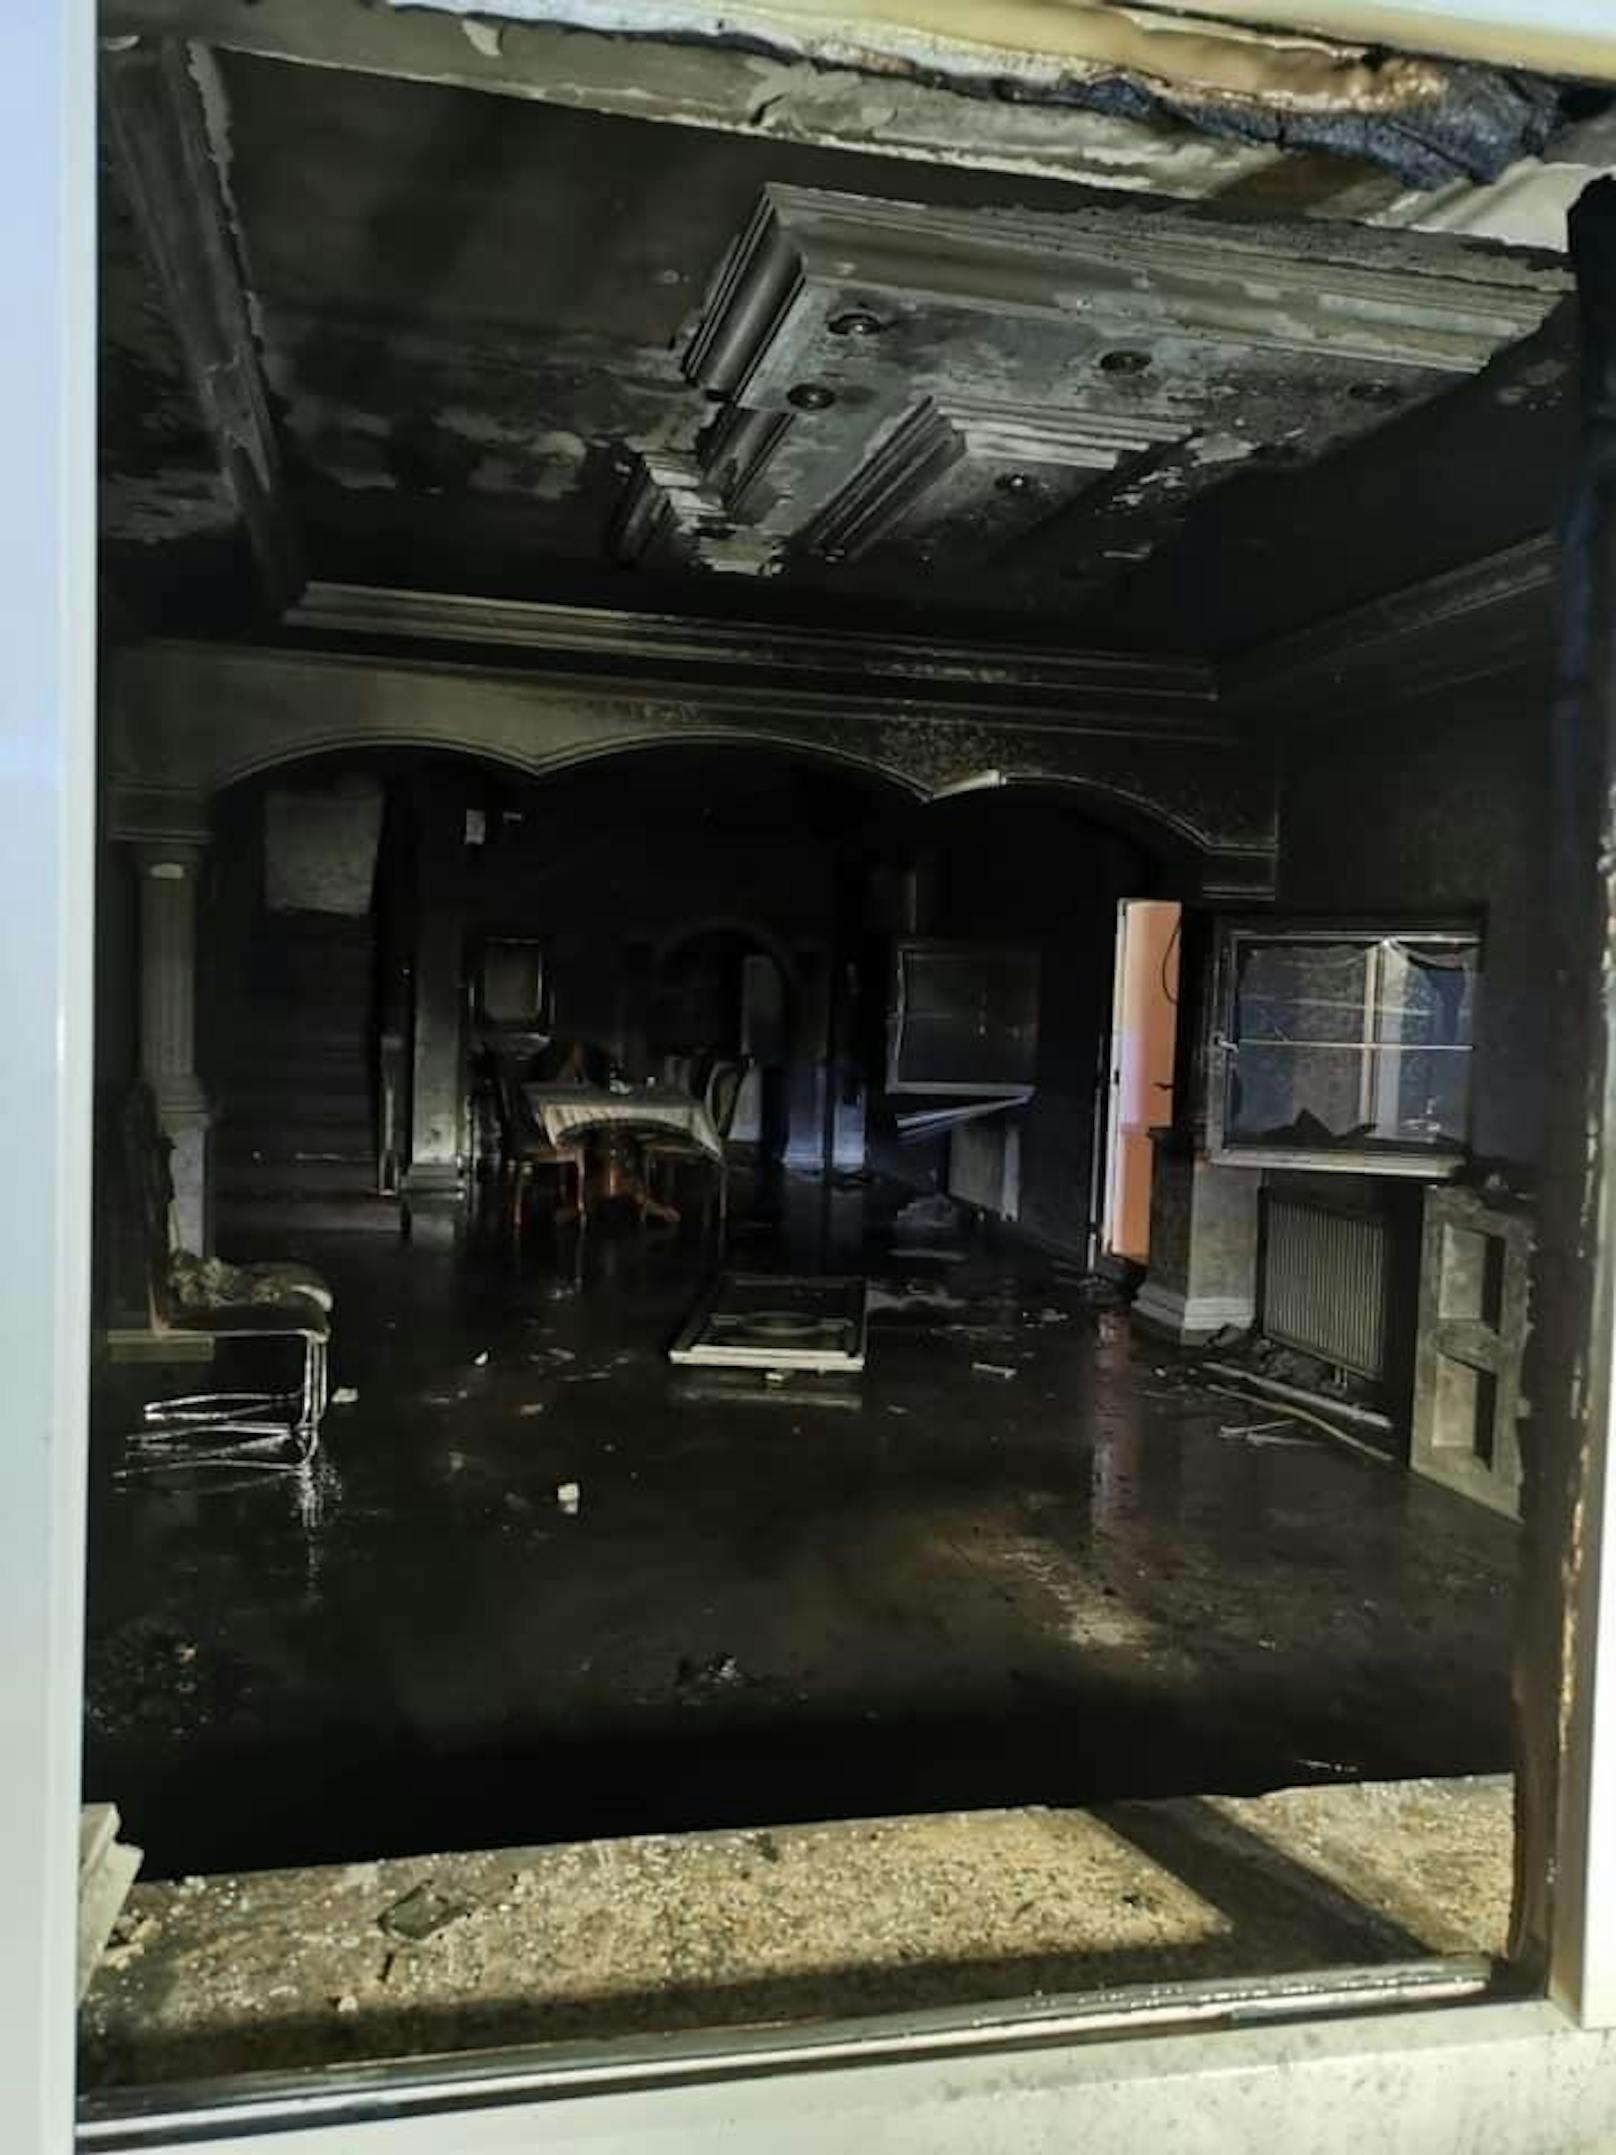 Brand in einem Wohnhaus in Gerasdorf bei Wien - das Feuer wurde gelegt.